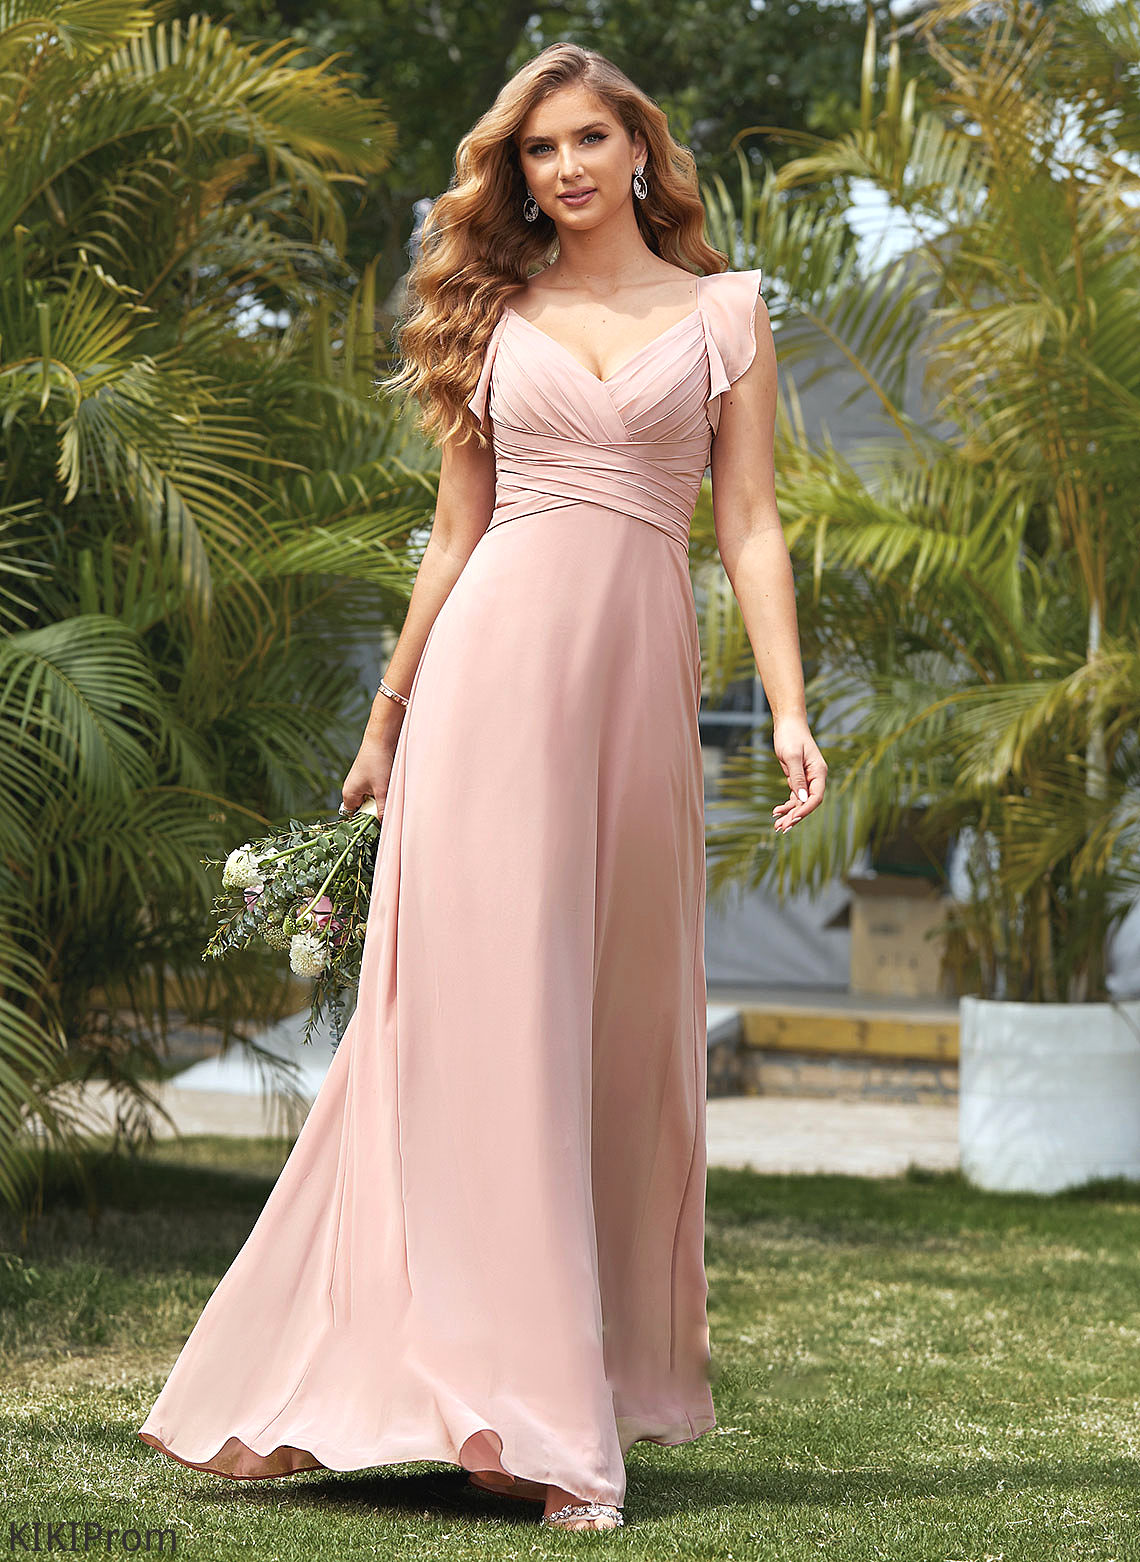 V-neck Silhouette CascadingRuffles Embellishment Length Fabric Empire Neckline Floor-Length Skyla Bridesmaid Dresses